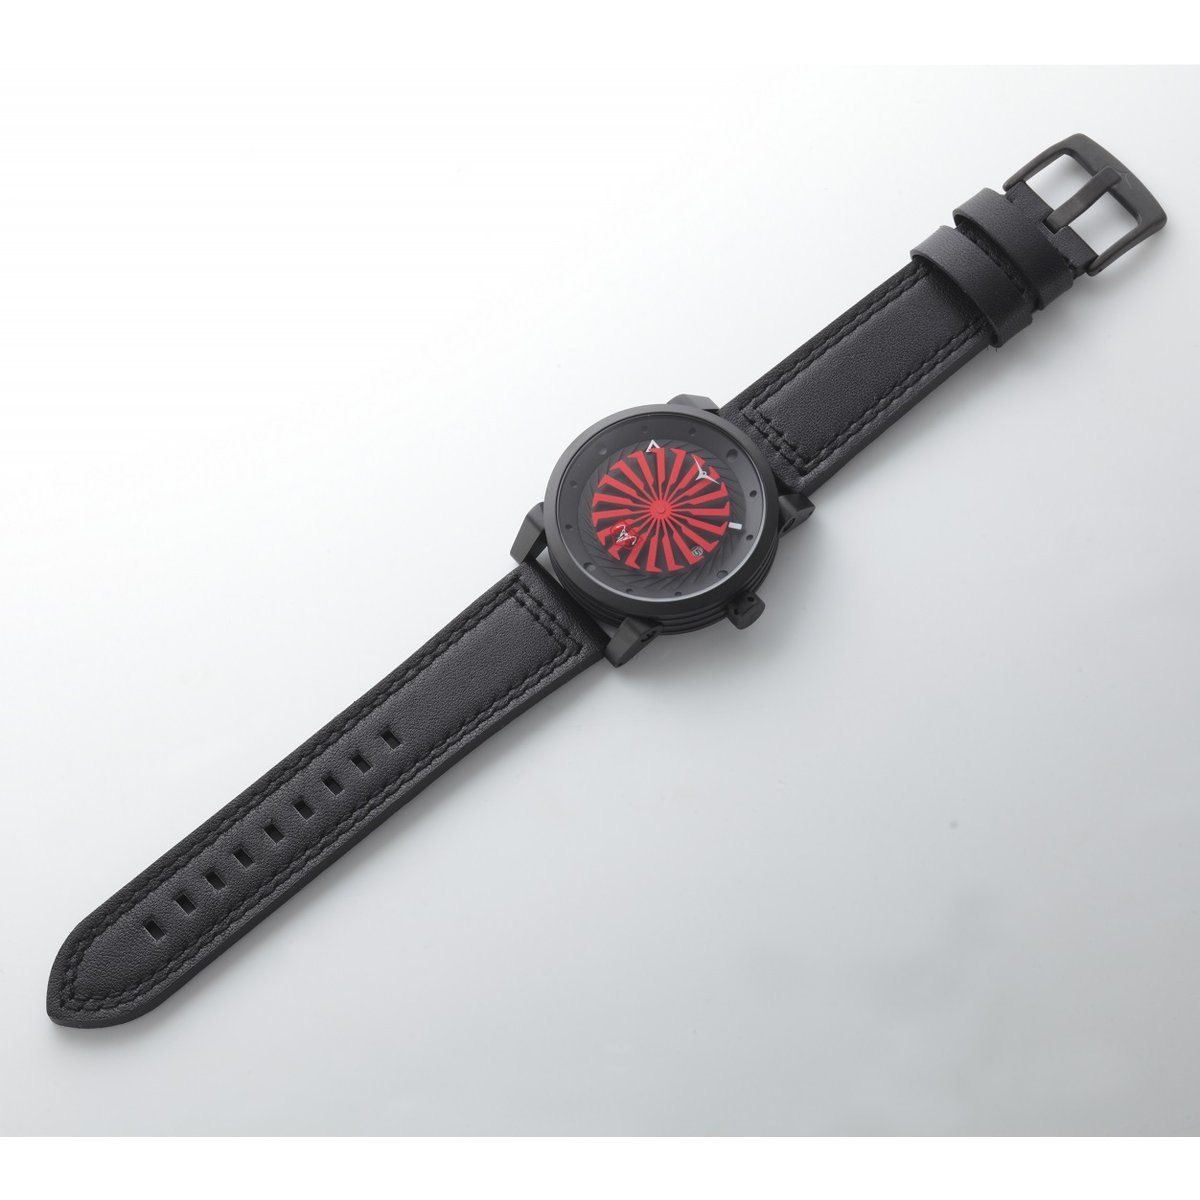 仮面ライダー1号×ZINVO（ジンボ）コラボレーション腕時計 | 仮面 